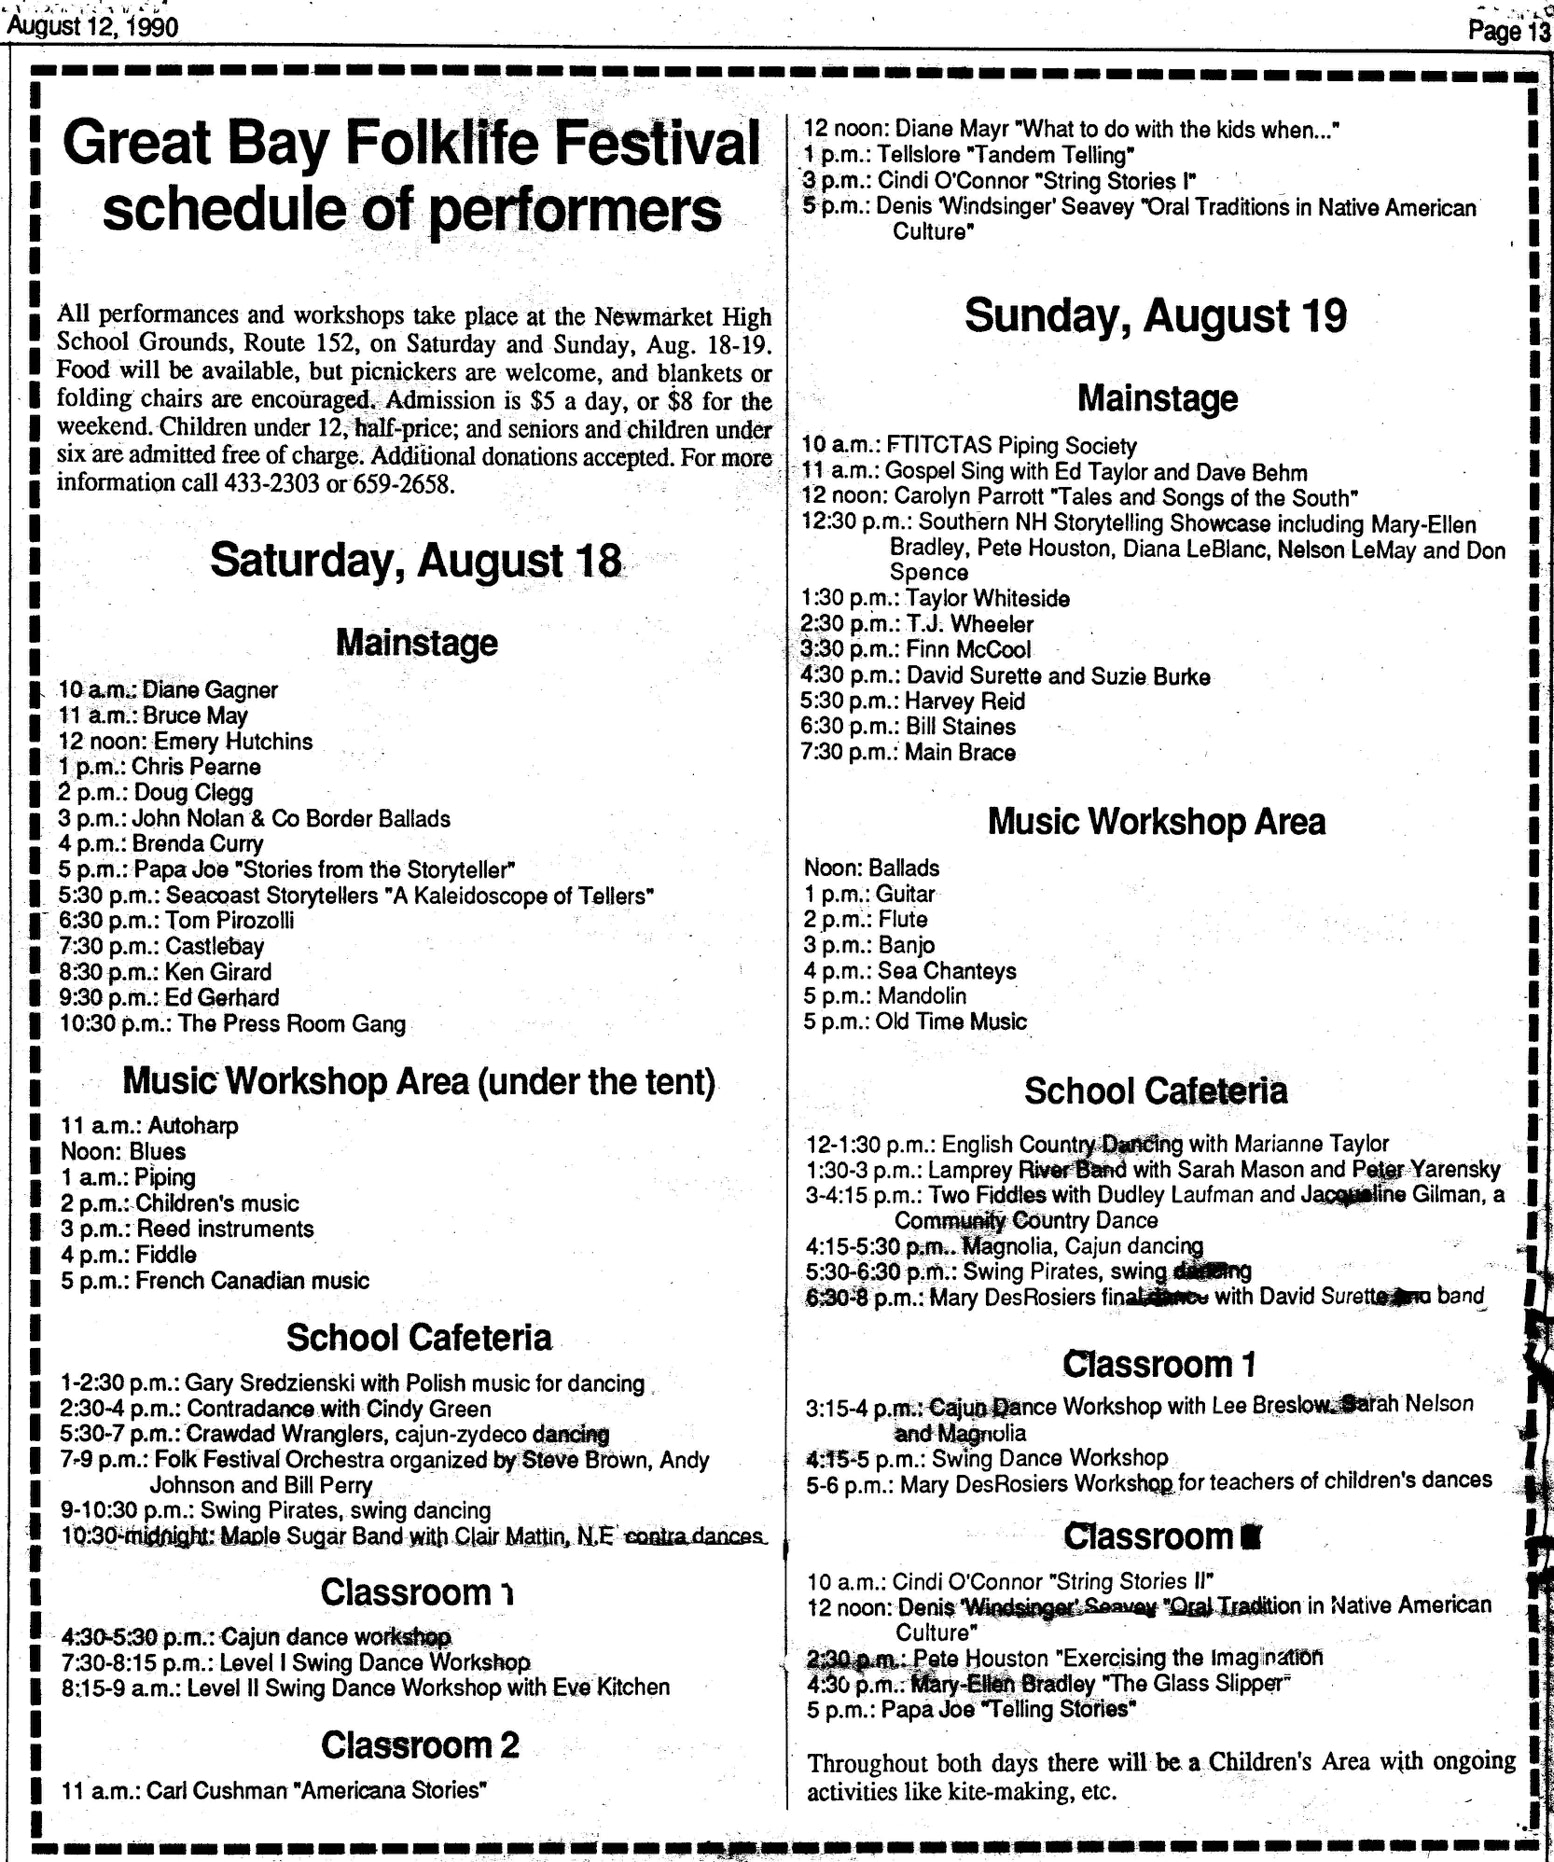 Great Bay Folk Festival schedule, August, 1990